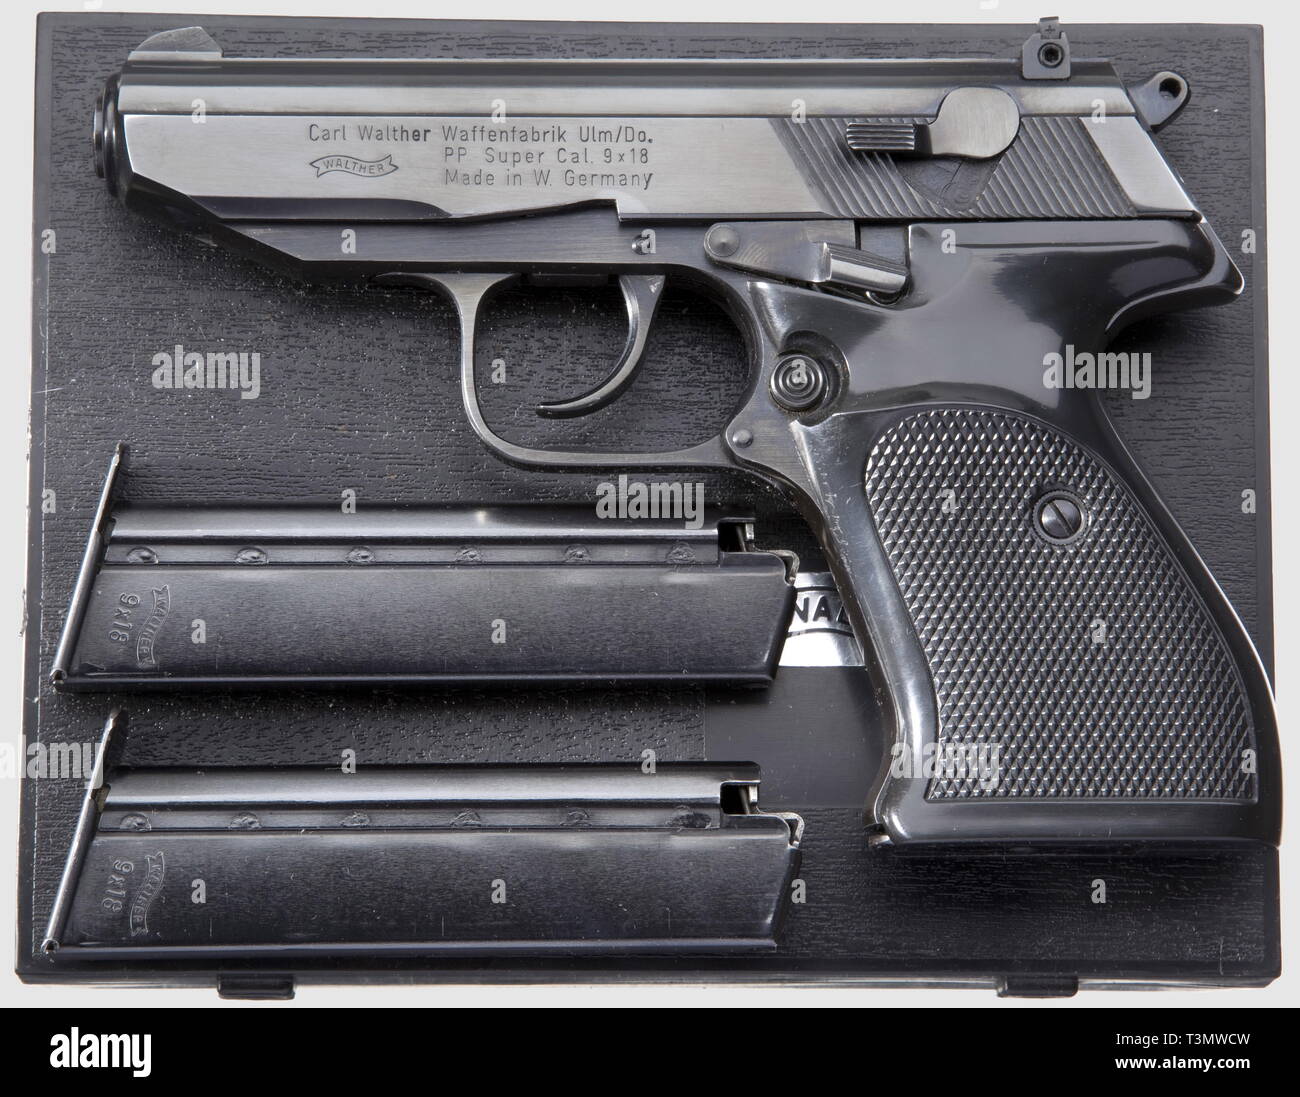 Pistole, Remington Nuovo Modello Single-Action cinghia, calibro .36, con due riviste, Germania, Additional-Rights-Clearance-Info-Not-Available Foto Stock